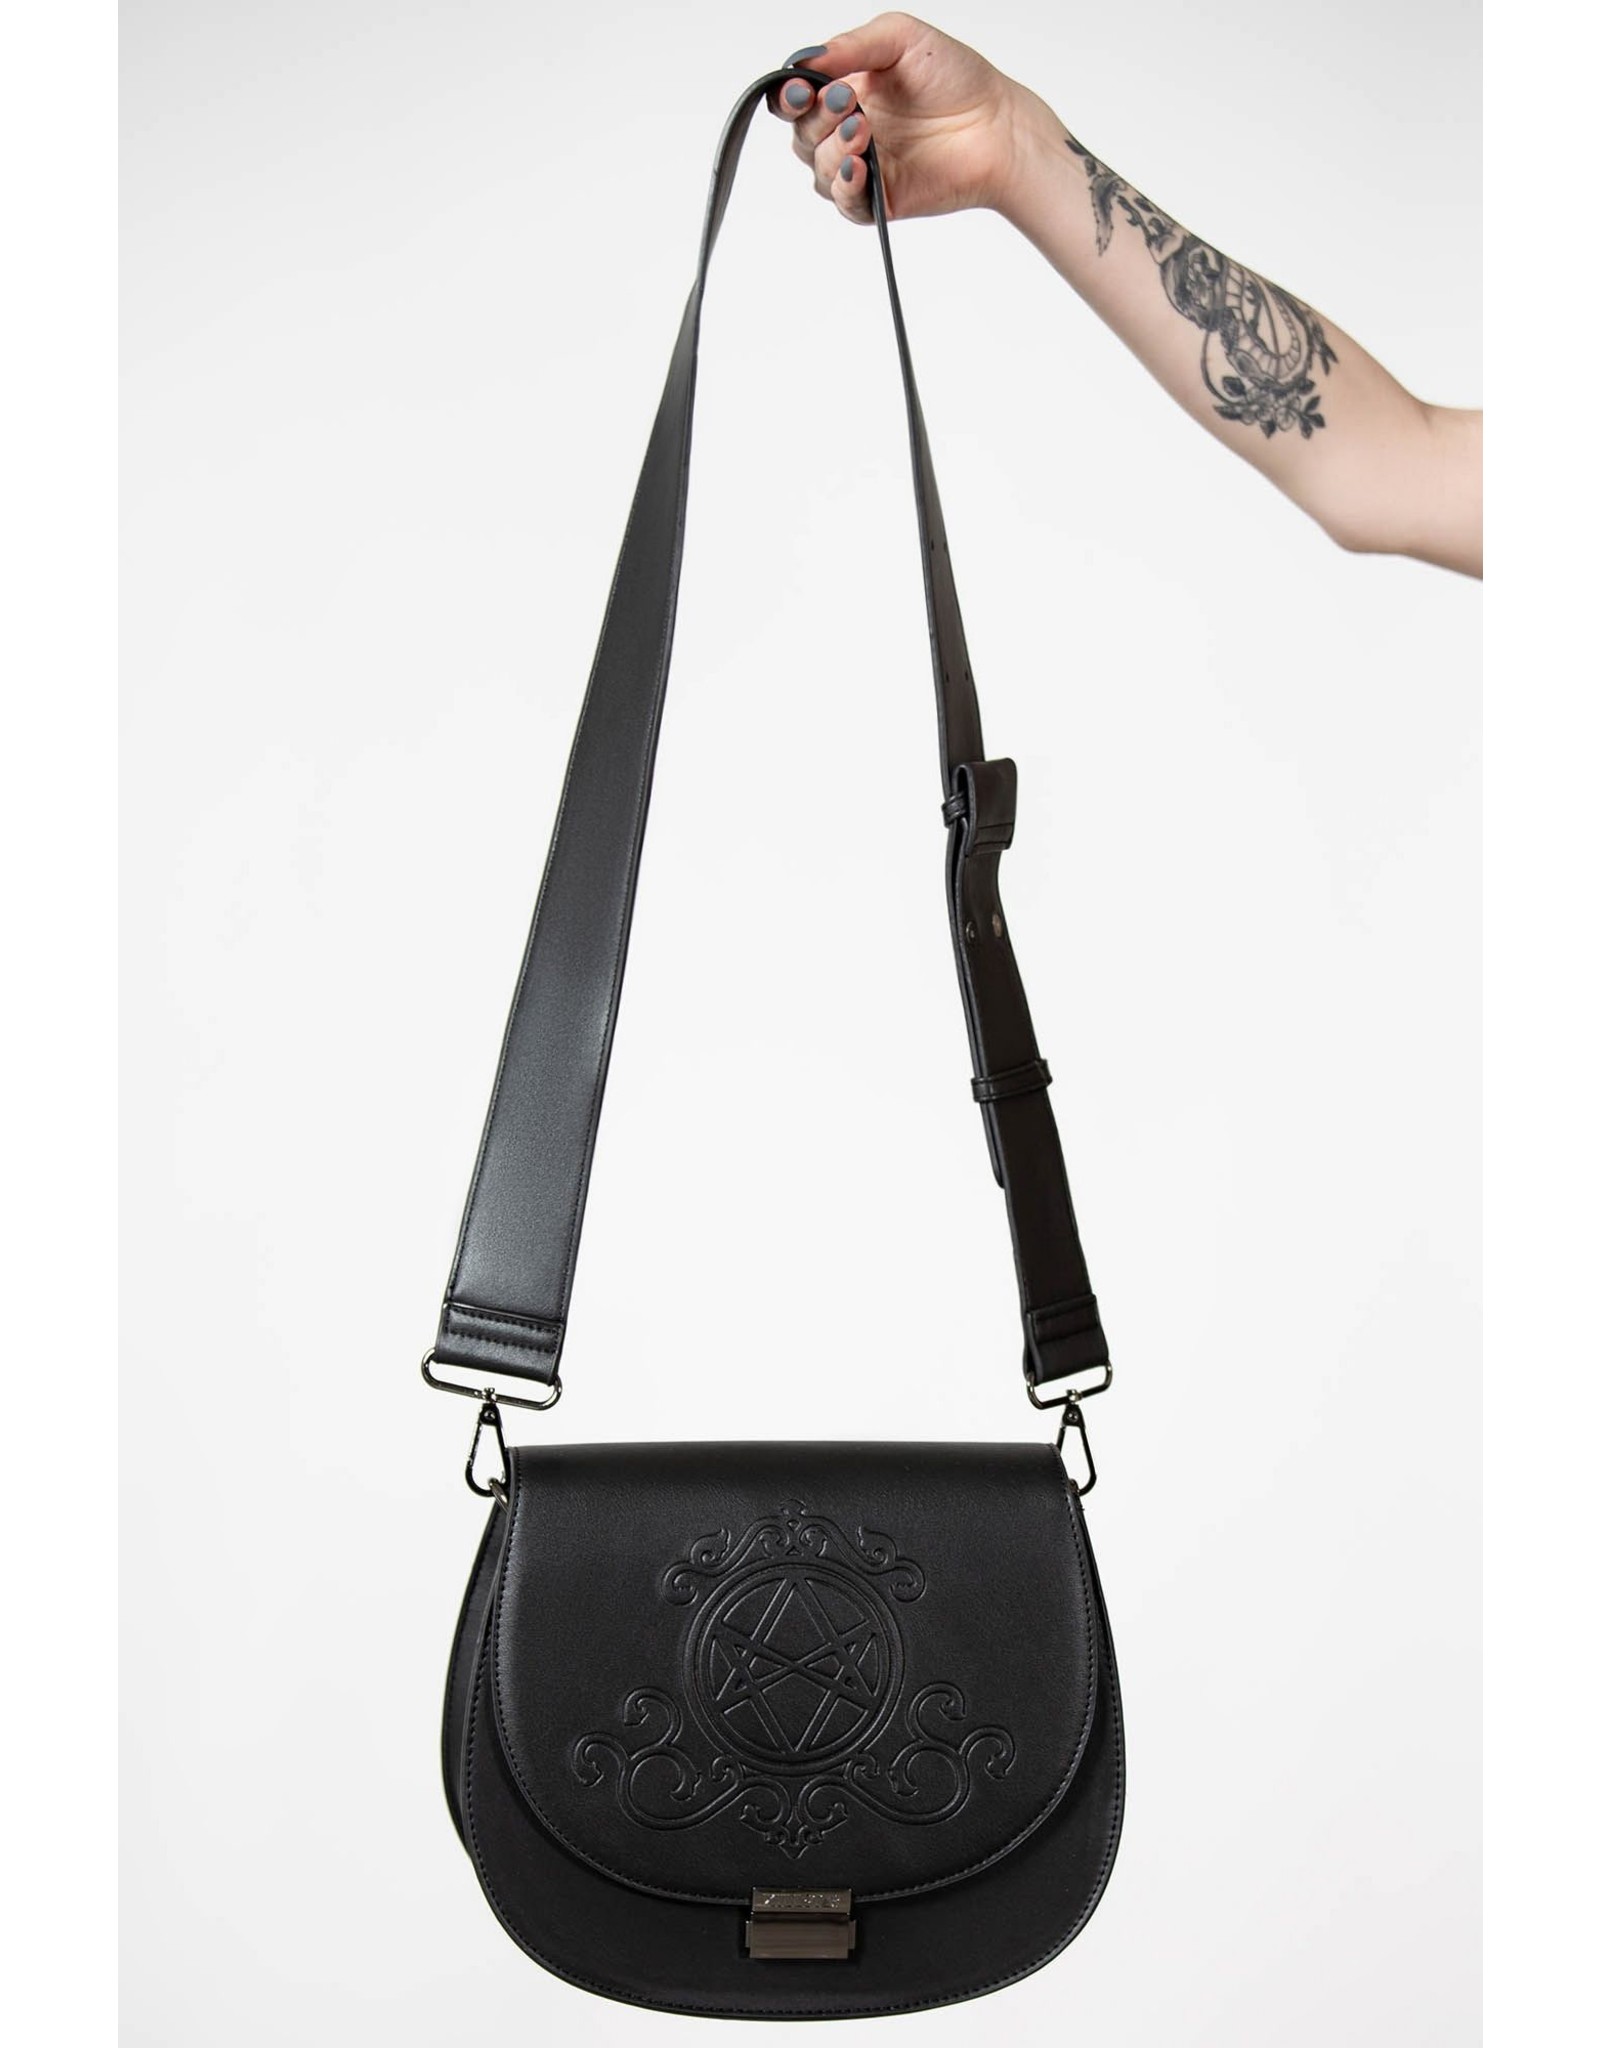 Killstar Gothic Bags Steampunk Bags - Killstar Austra handbag